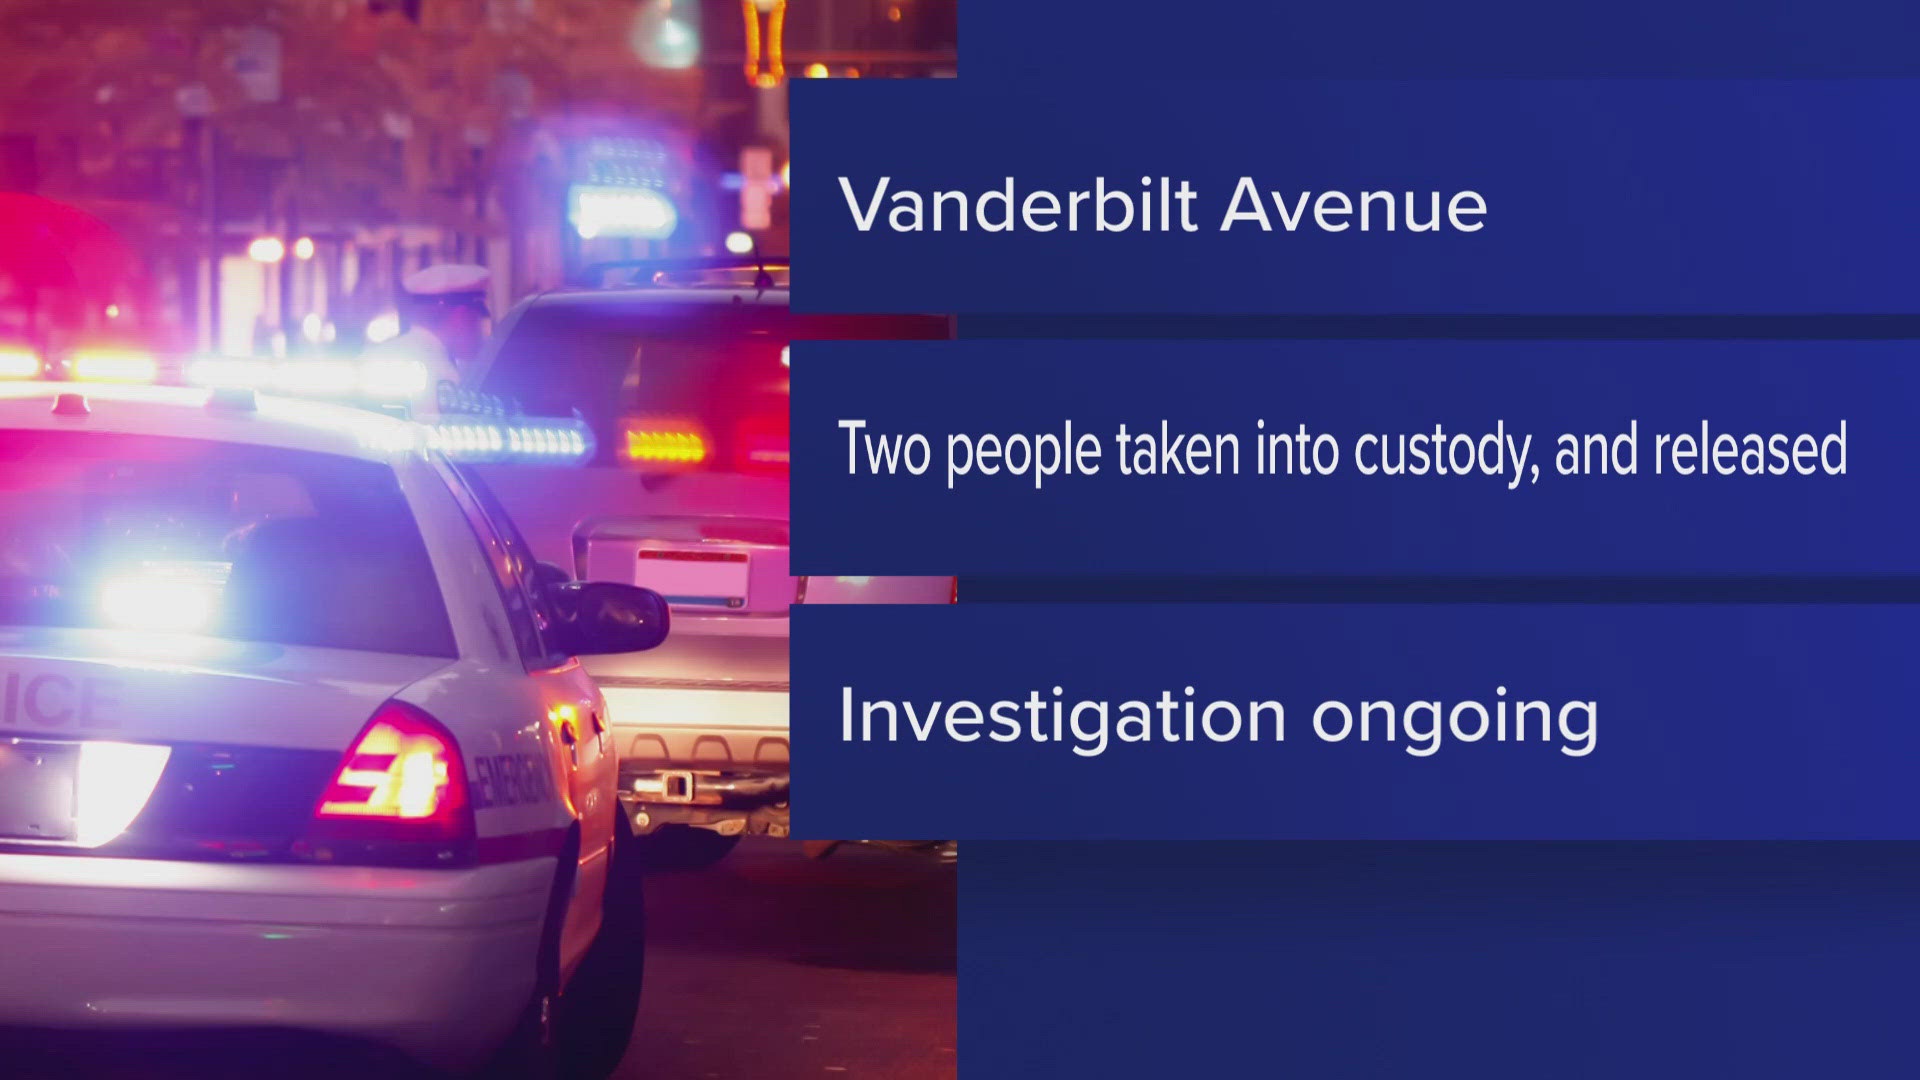 Man stabbed in Niagara Falls home on Vanderbilt Ave.